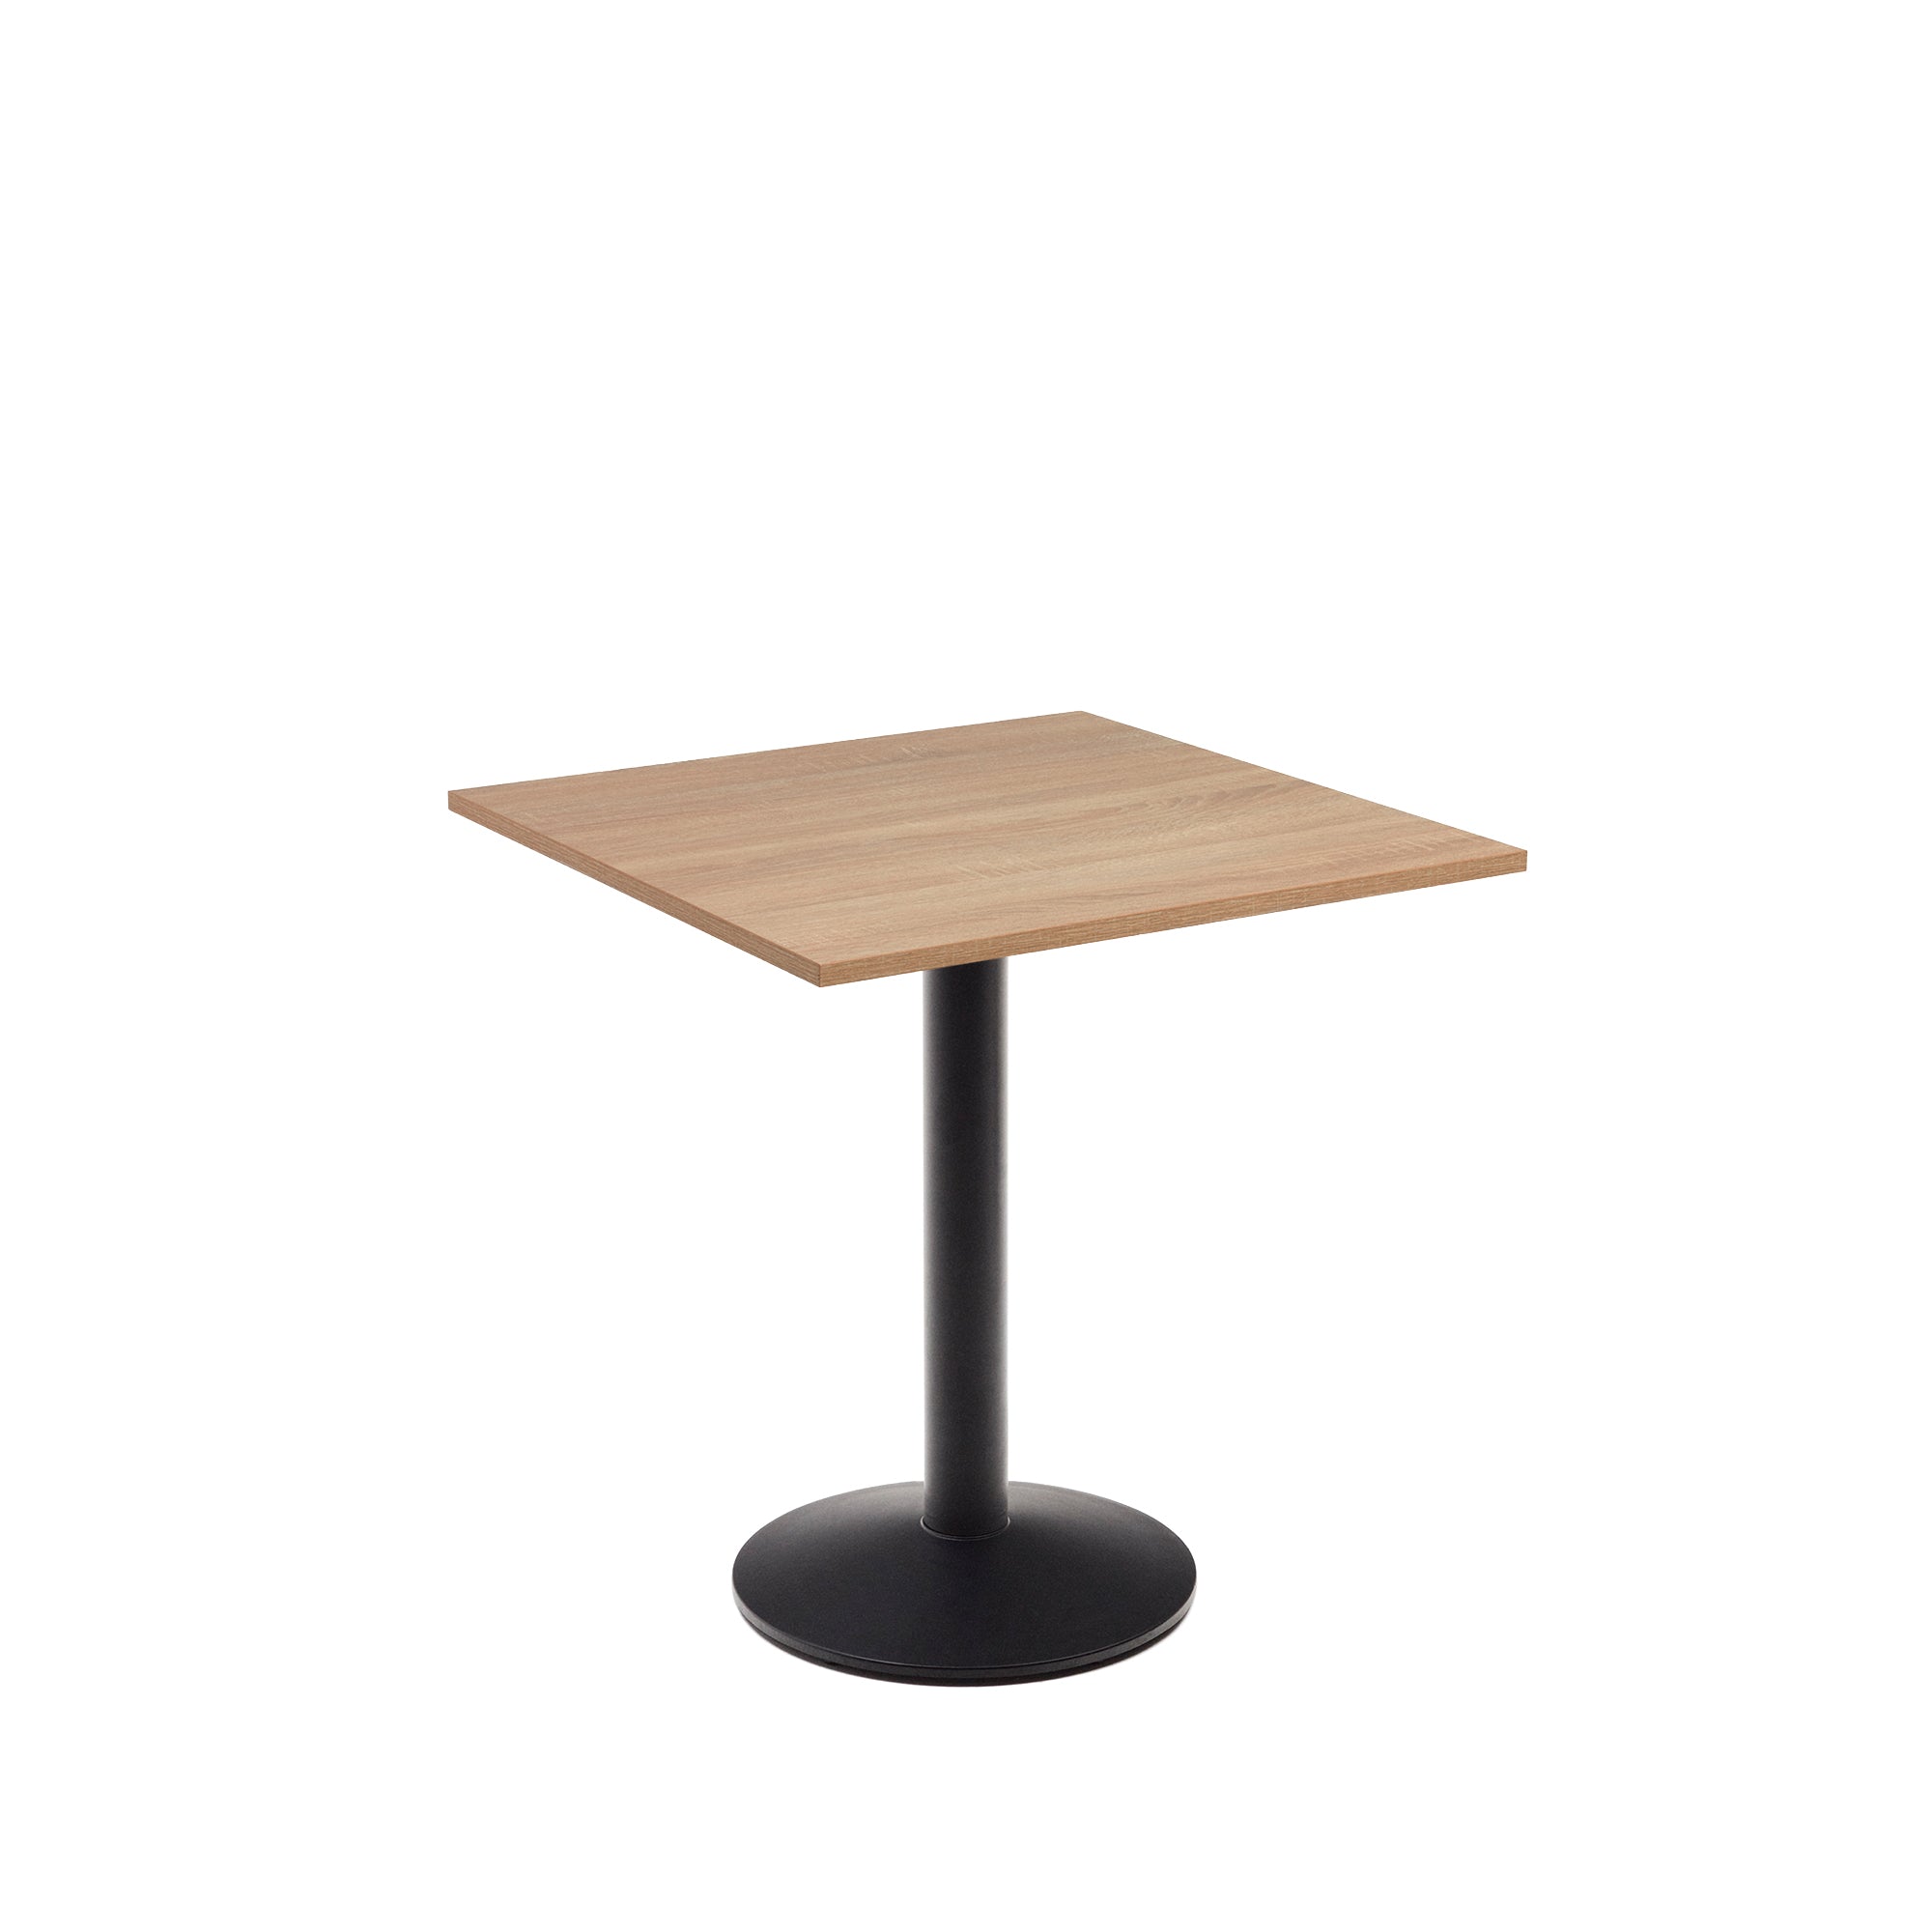 Esilda asztal, natúr melaminból, fekete festett fémlábbal, 70x70x70 cm, 70x70x70 cm